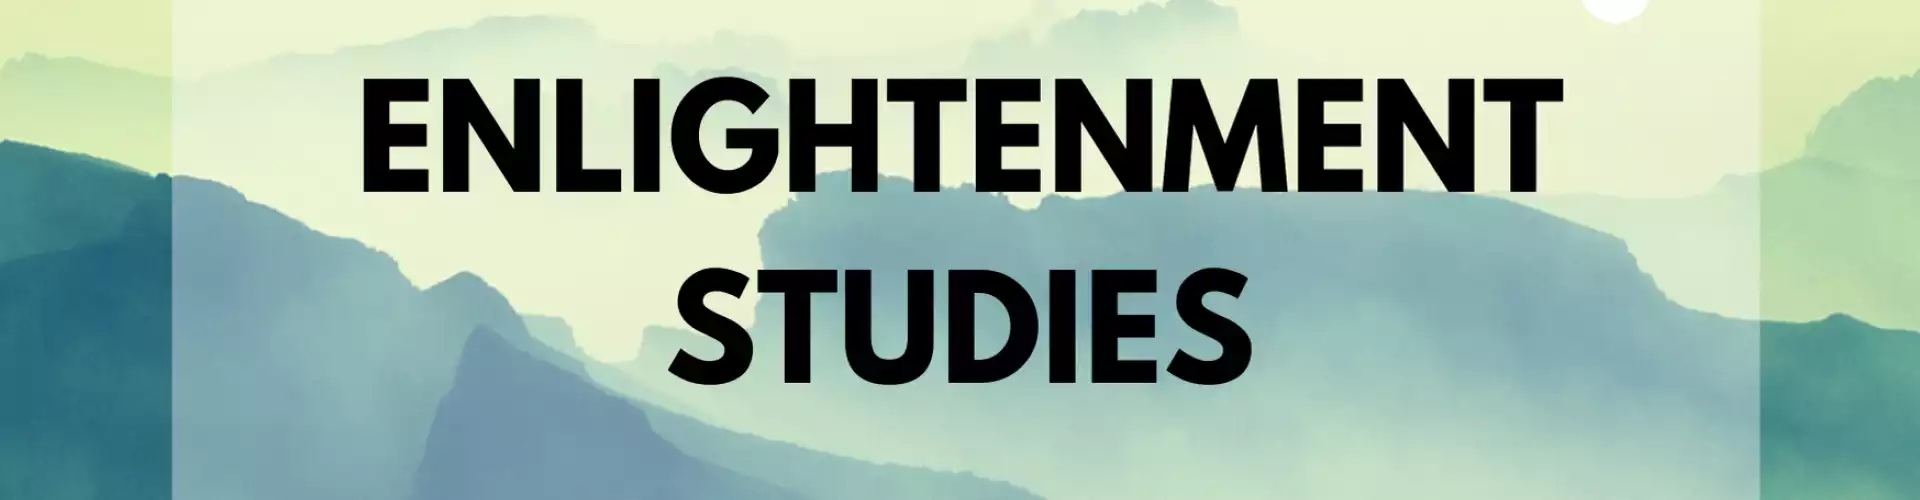 Enlightenment Studies